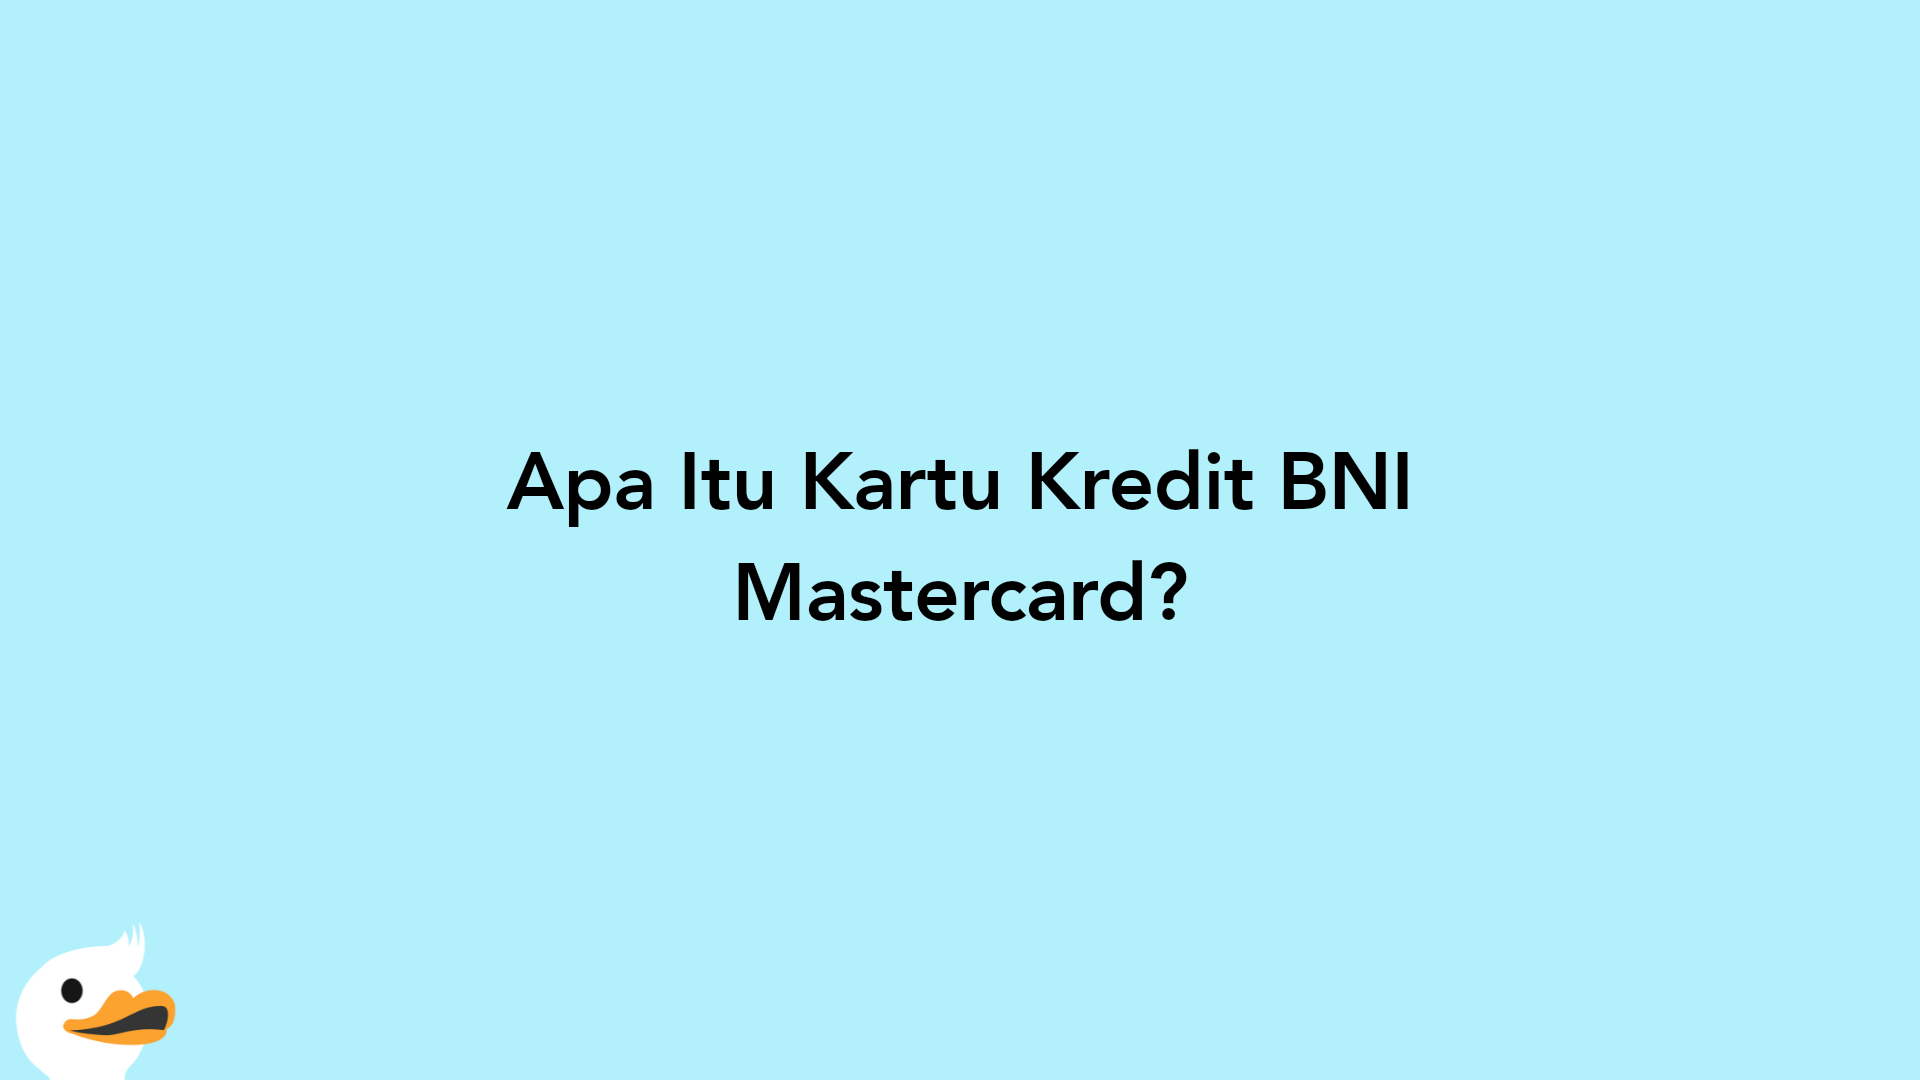 Apa Itu Kartu Kredit BNI Mastercard?